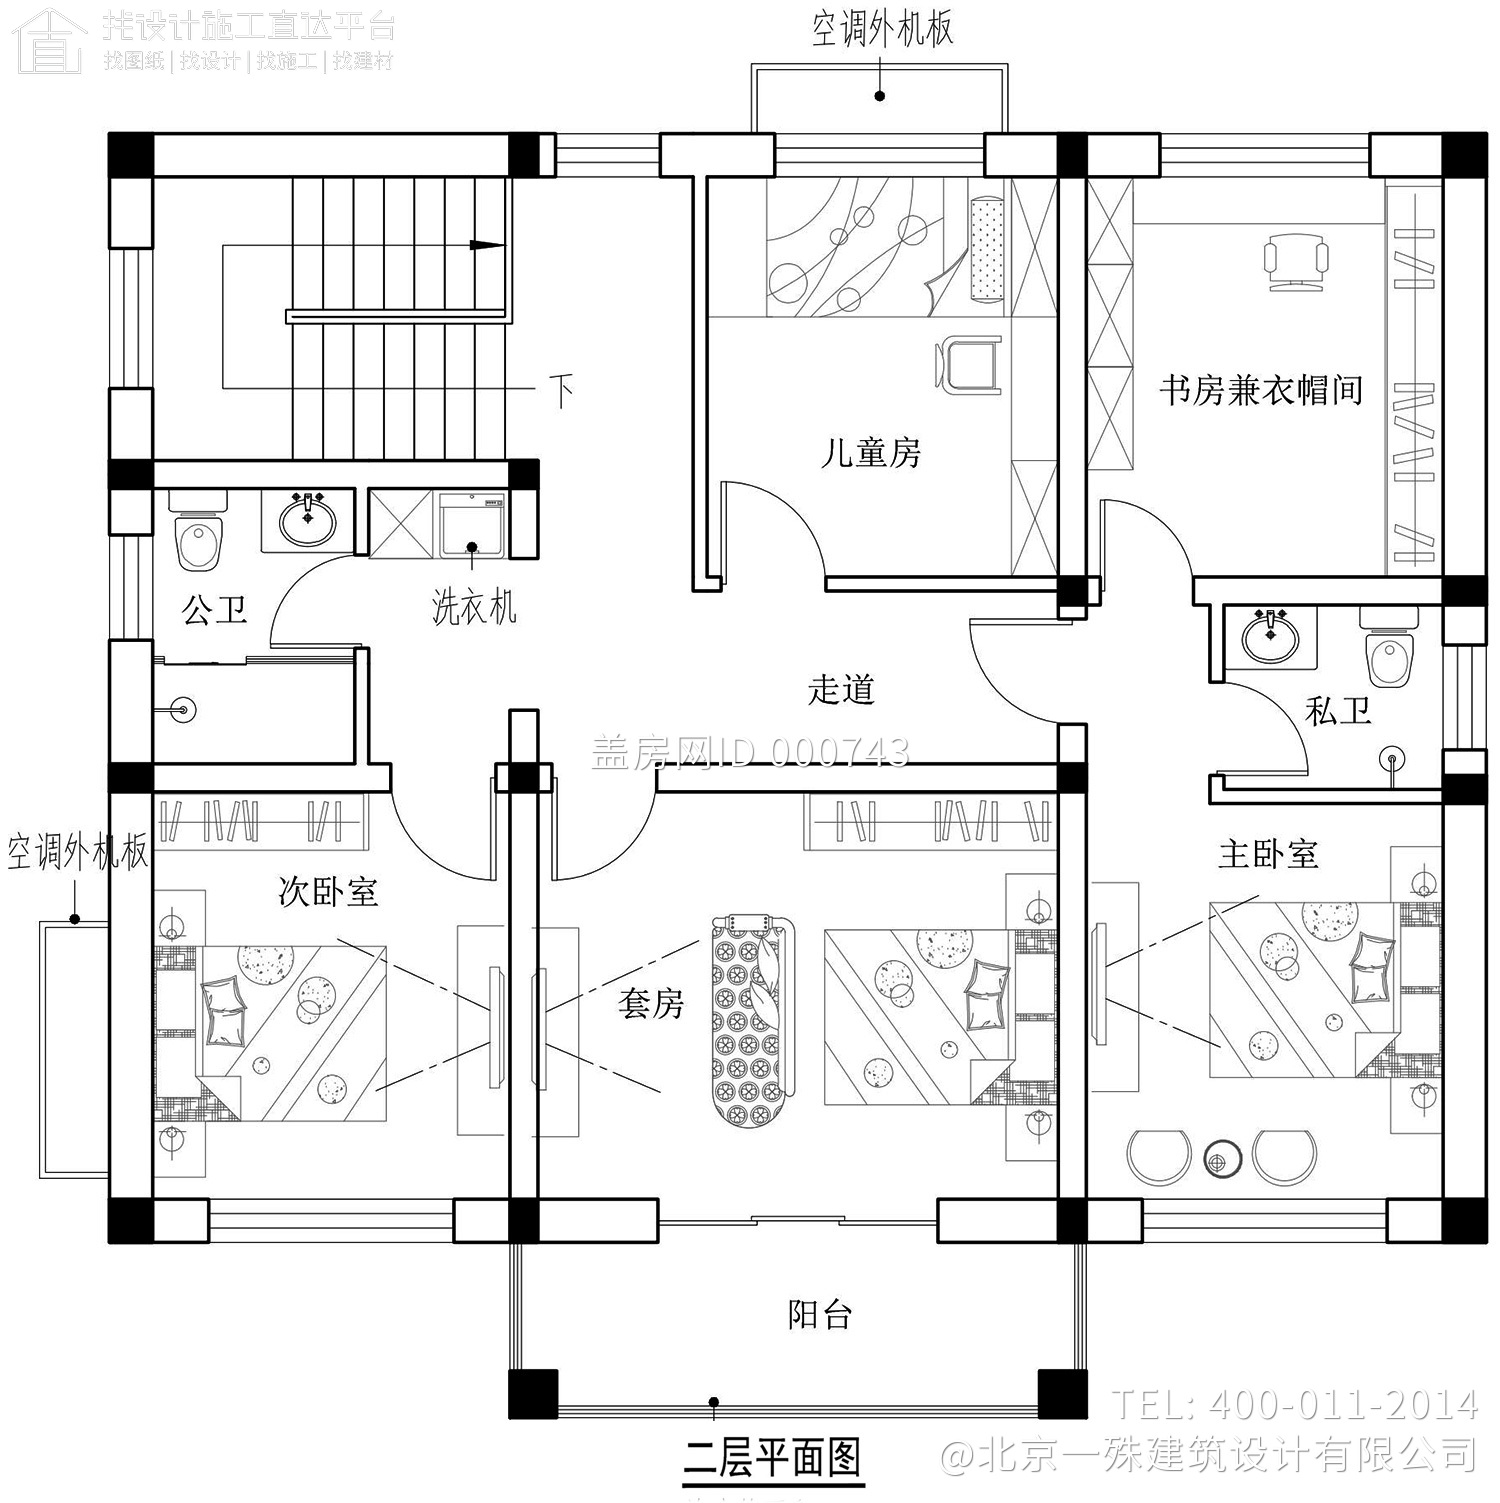 北京密云王家二层欧式别墅设计